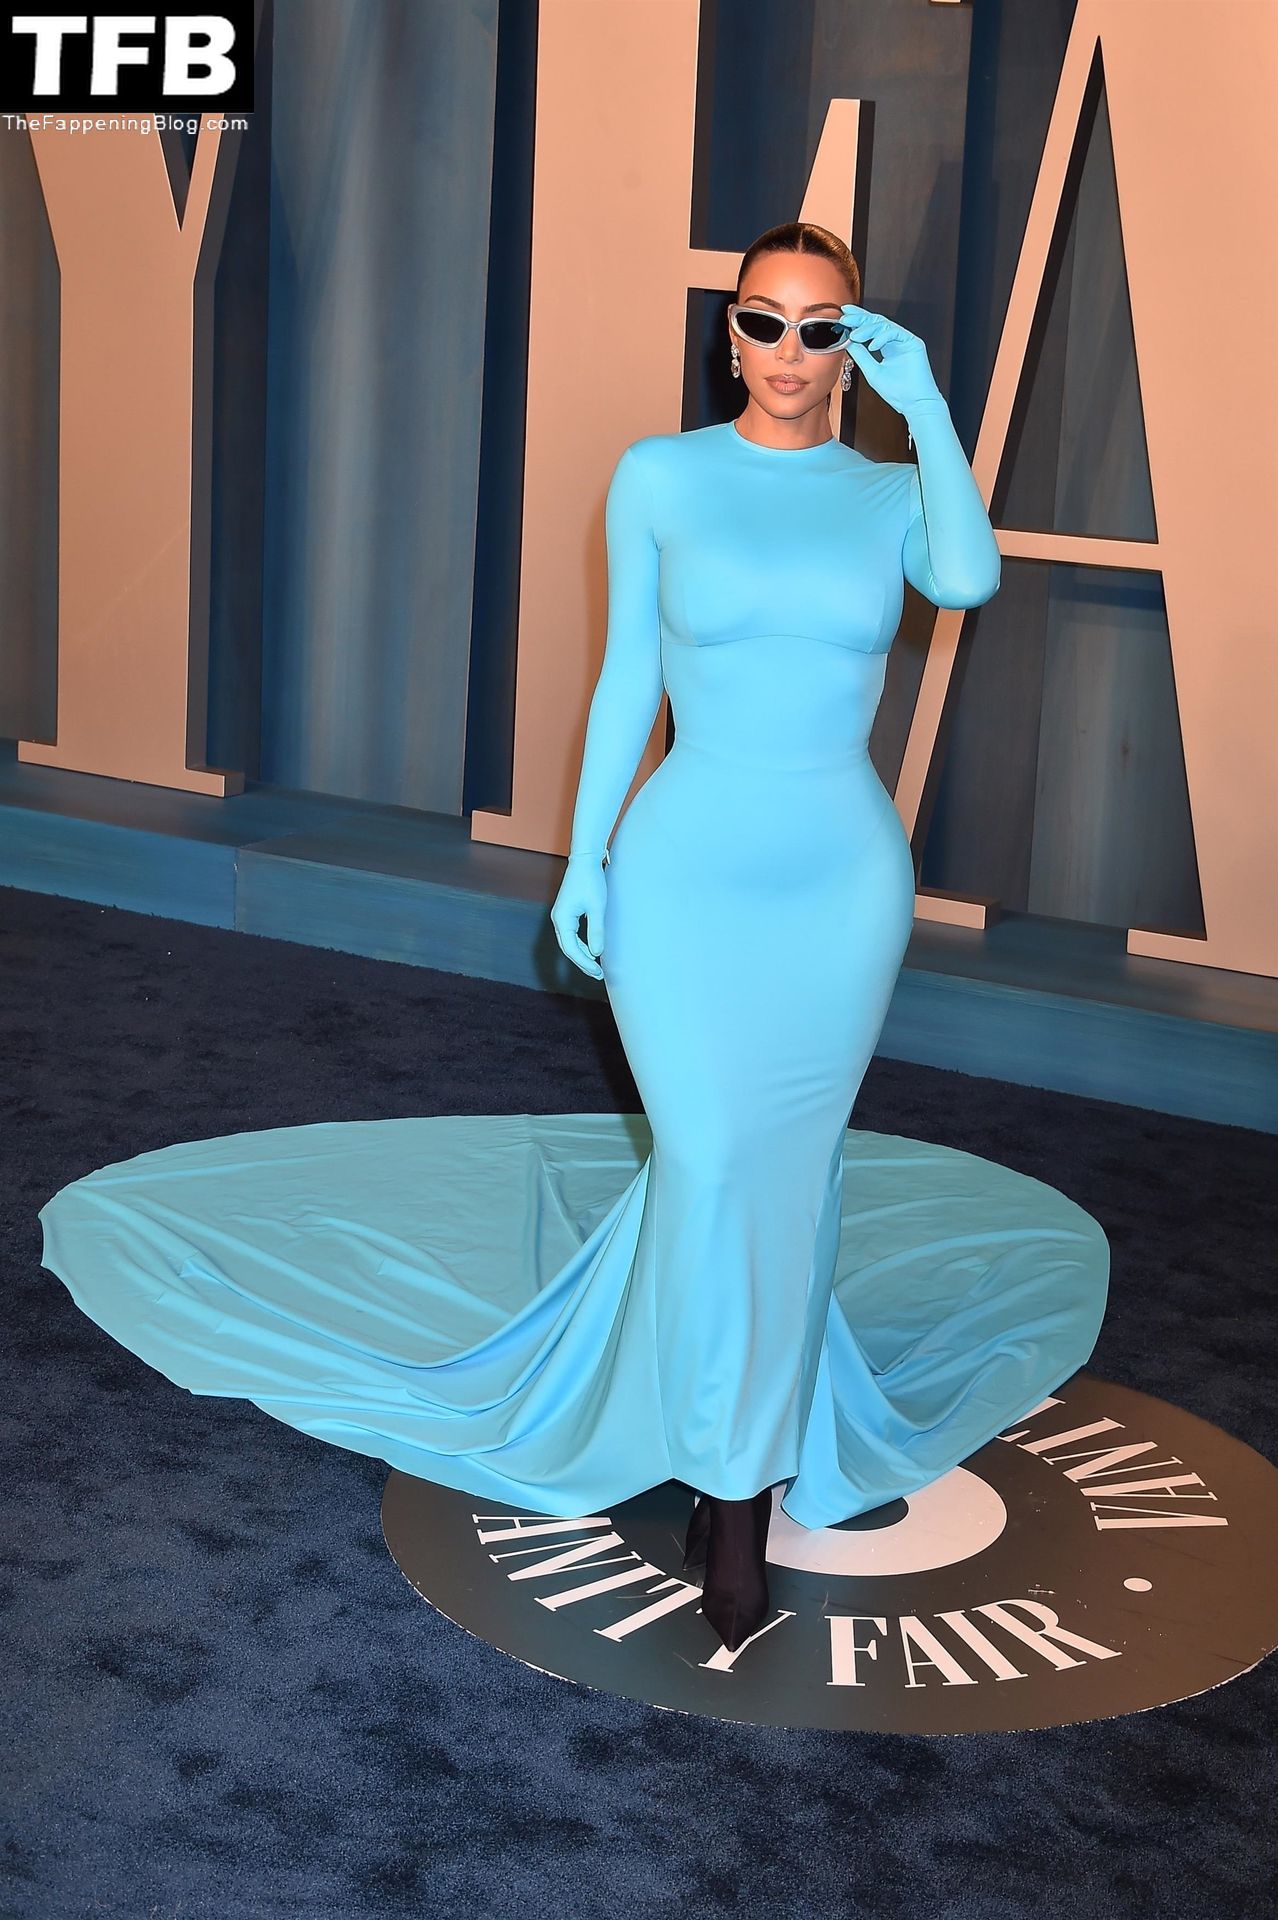 Kim-Kardashian-Sexy-The-Fappening-Blog-23-1.jpg